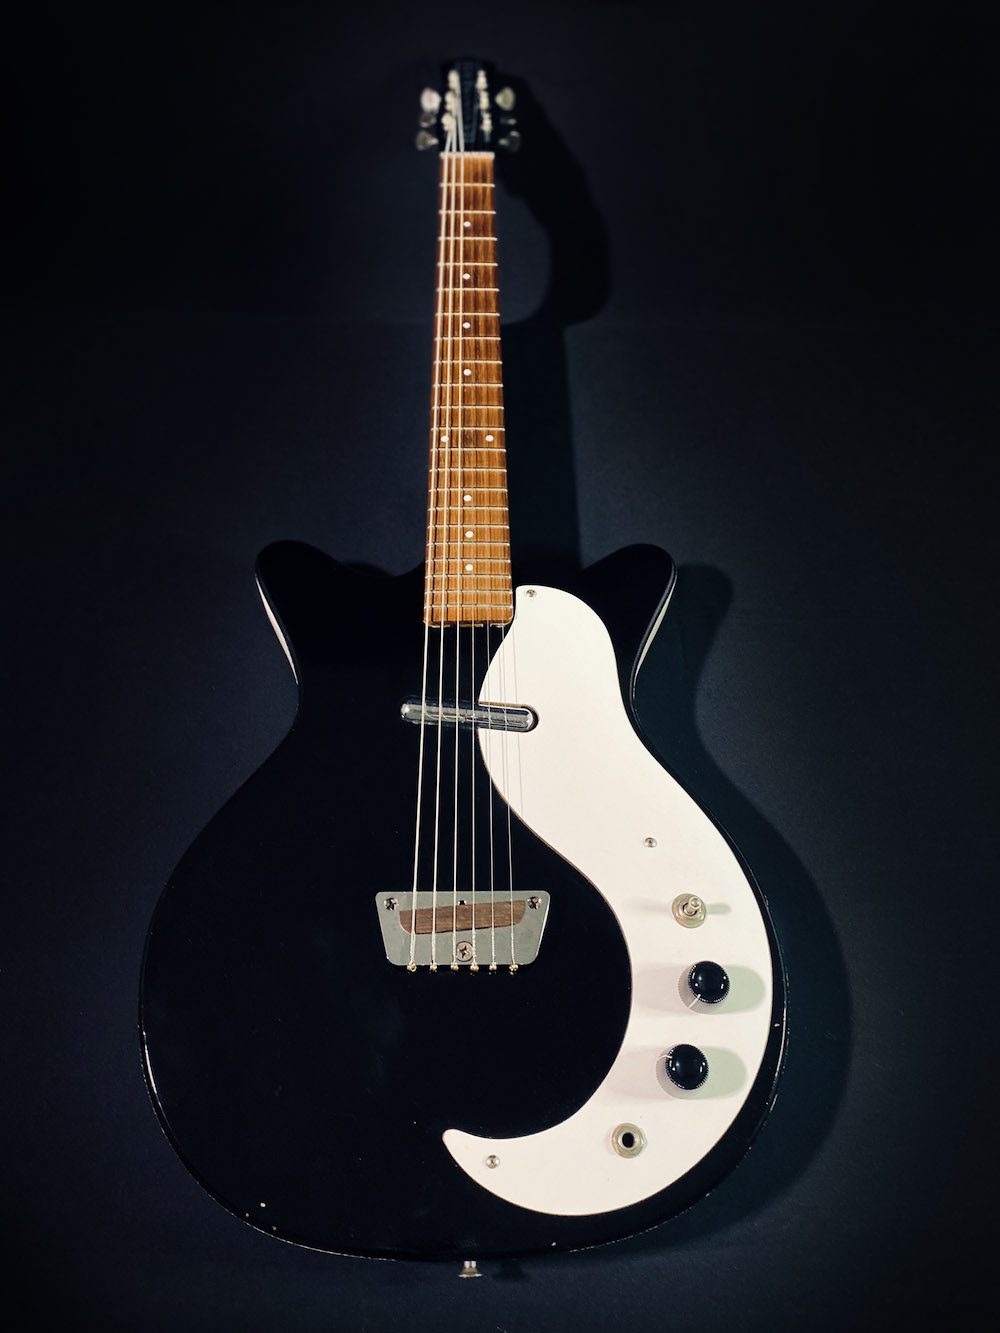 1963 Danelectro 3011 Shorthorn full guitar